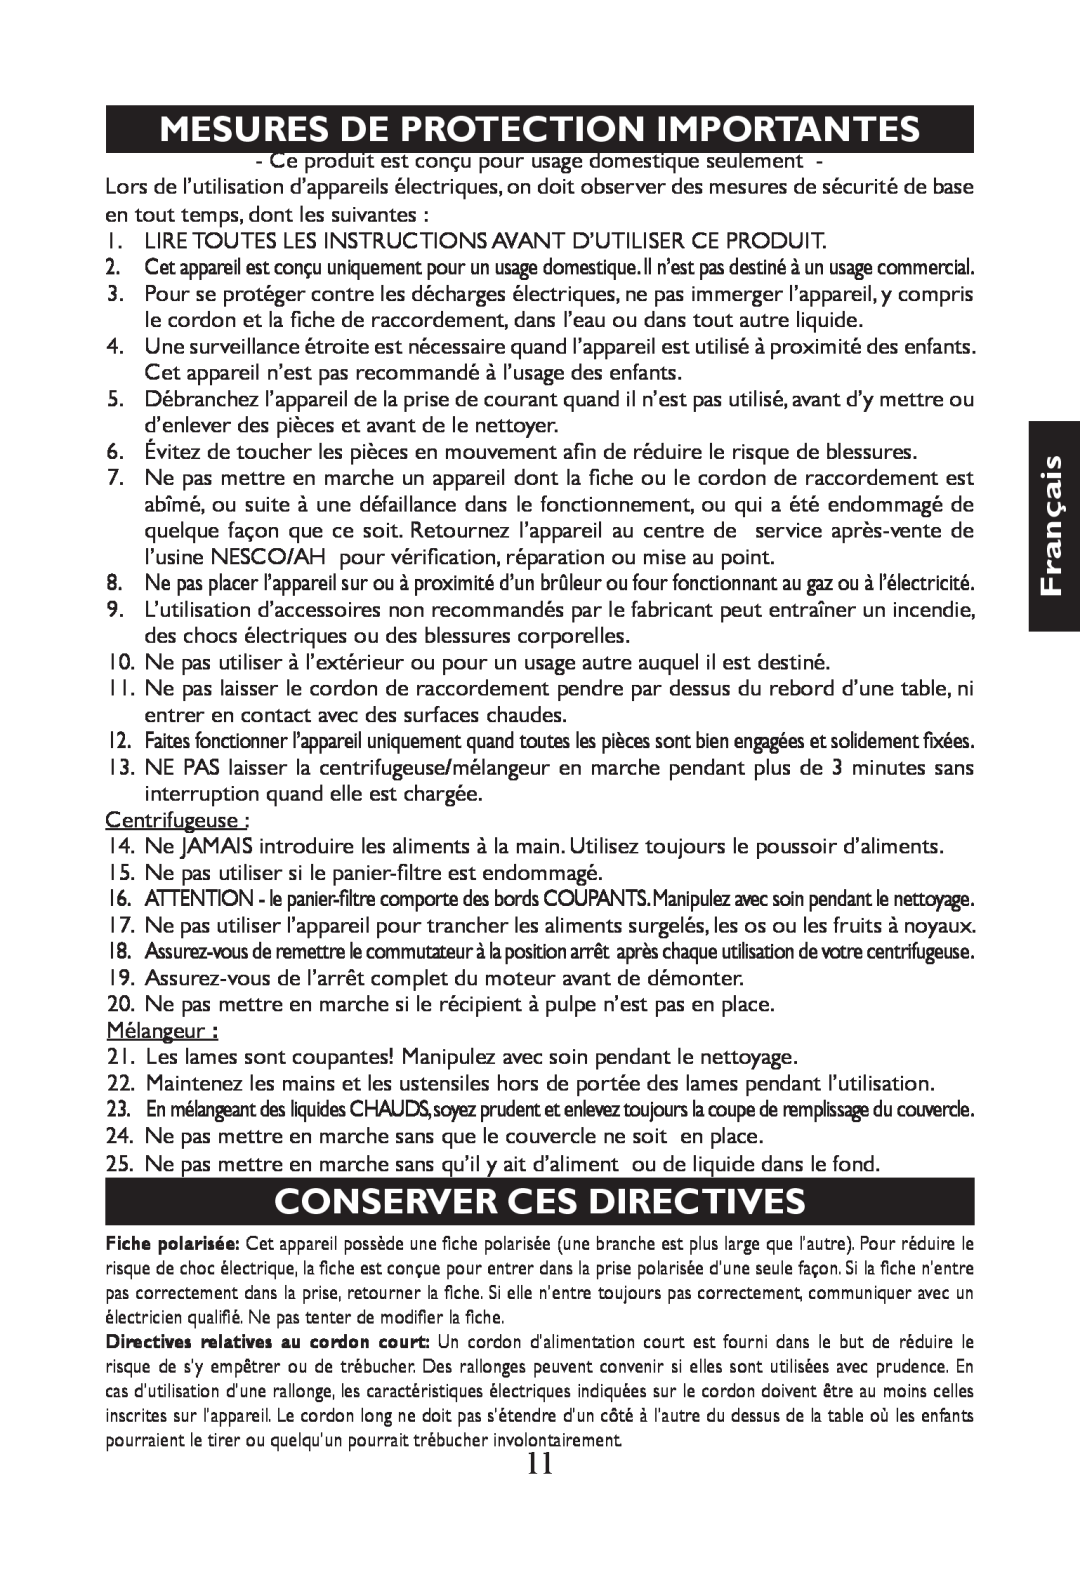 Nesco JB-50 manual Français, Mesures De Protection Importantes, Conserver Ces Directives 